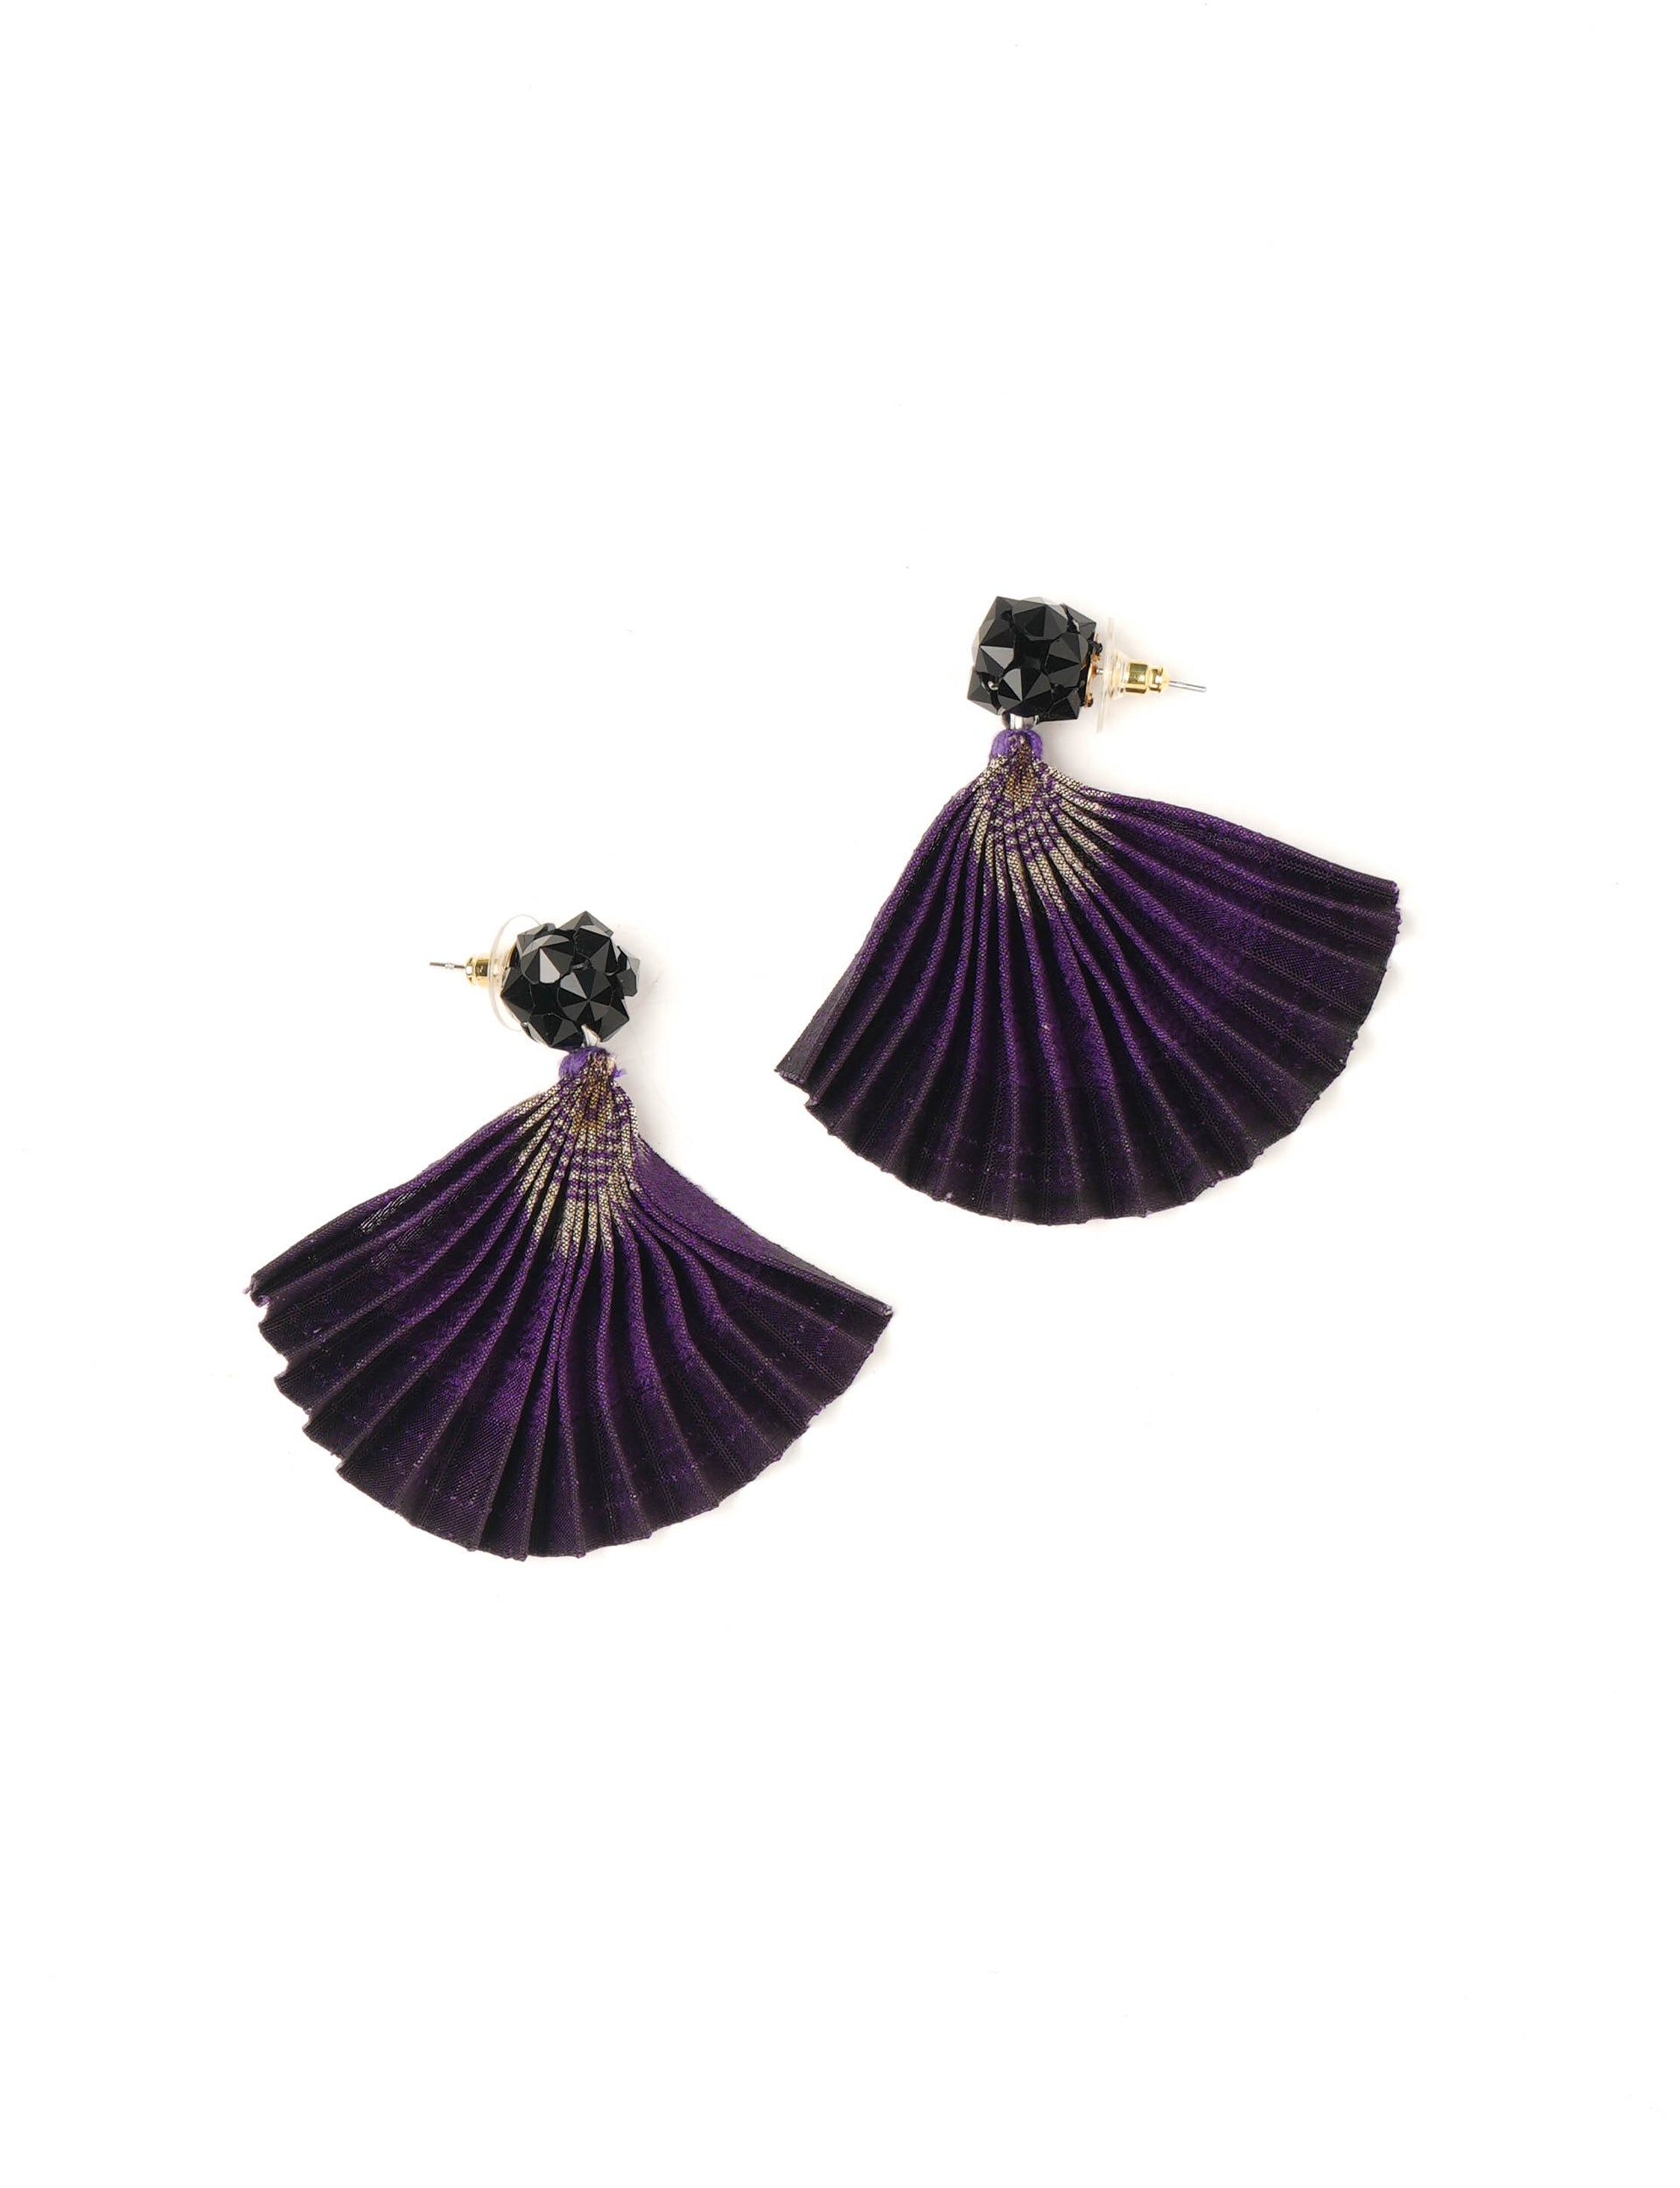 Buy SALE Purple Tassel Earrings Purple Statement Earrings Long Purple  Earrings Purple Jewelry Gifts Unique Purple Earrings Online in India - Etsy